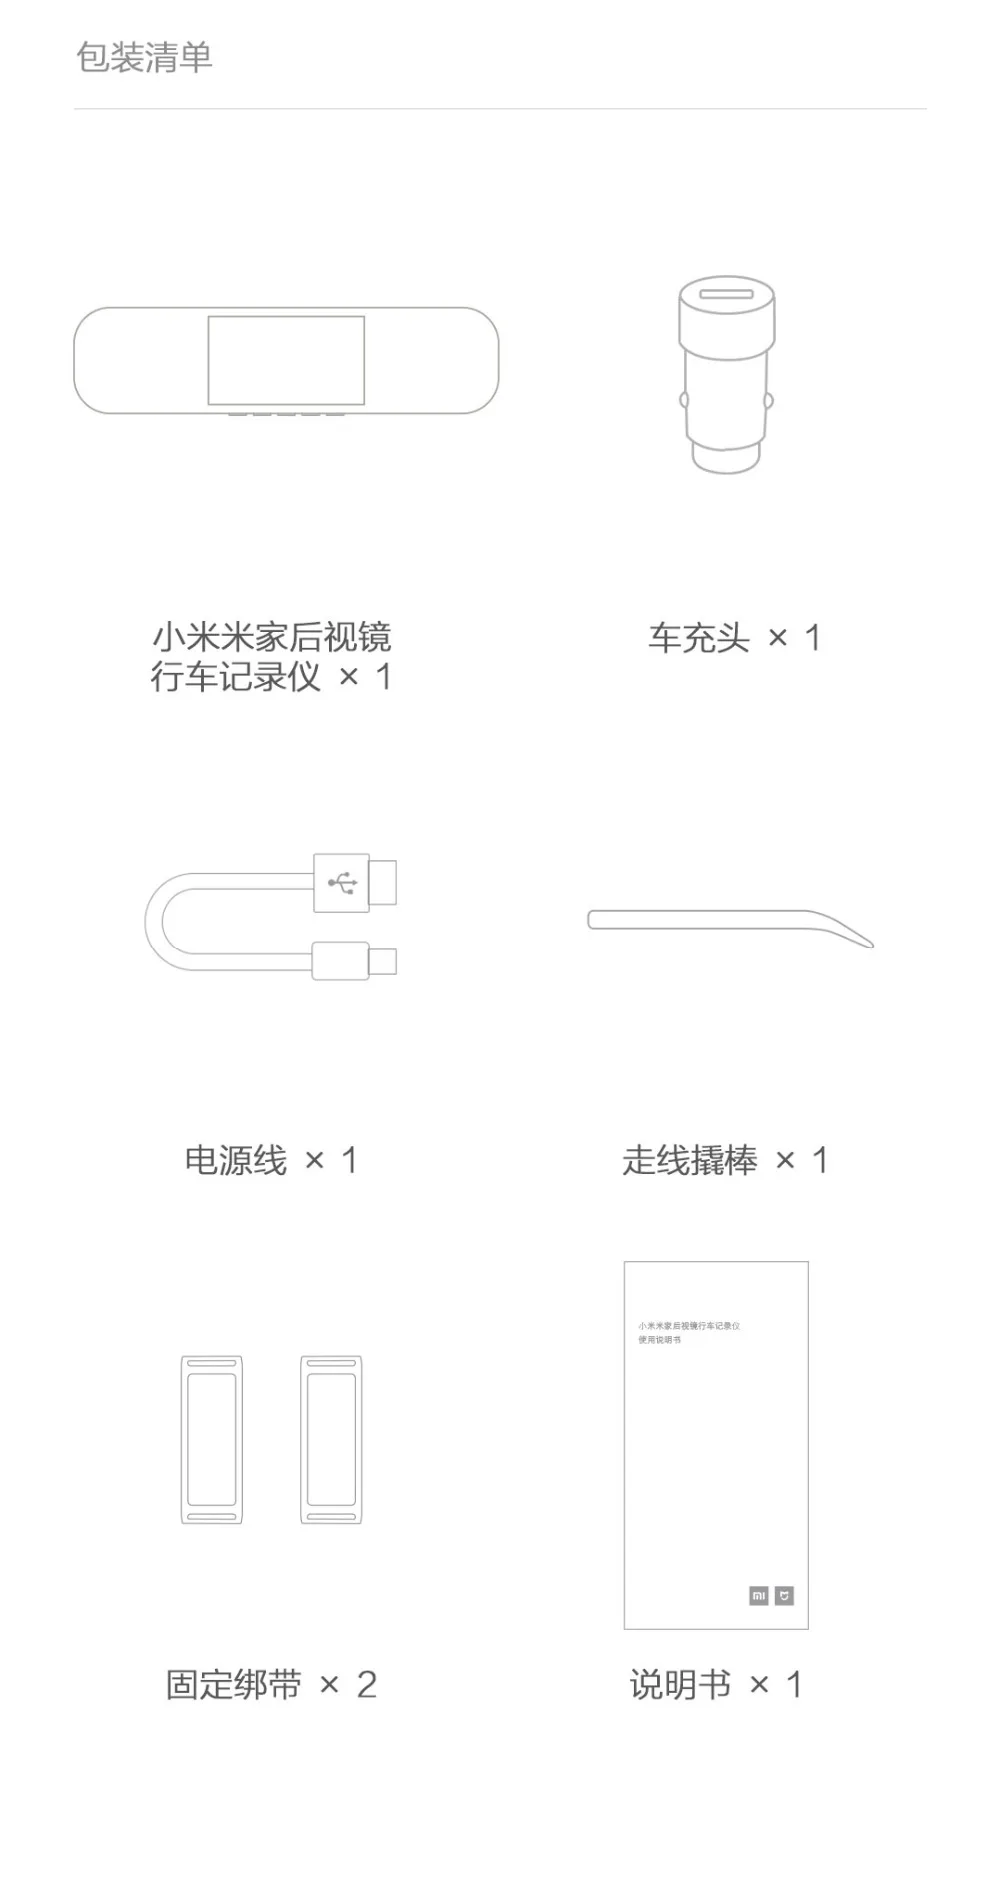 Xiaomi Mijia зеркало заднего вида, автомобильная камера, умная камера 1080P HD ips экран IMX323, датчик изображения, водительский рекордер для автомобиля